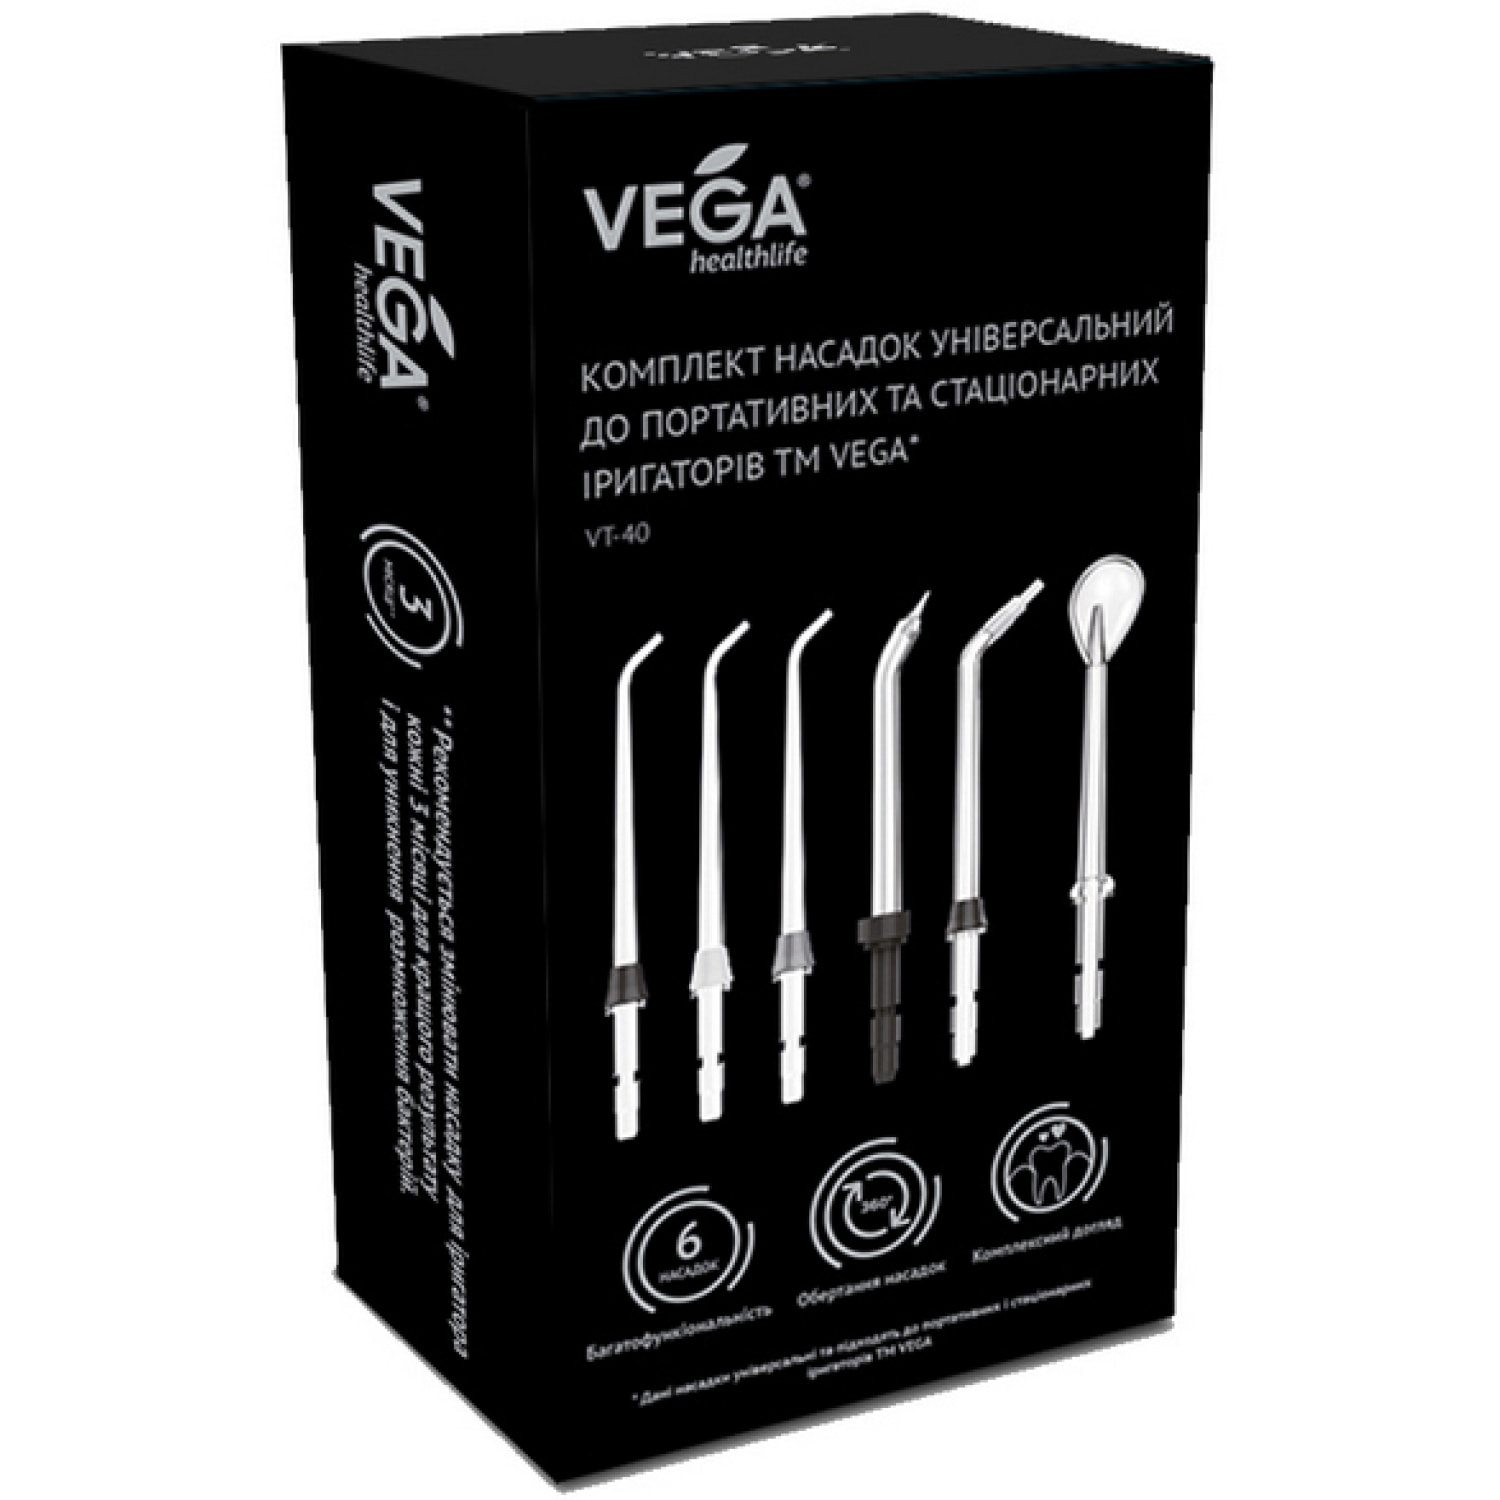 Комплект насадок Vega універсальний до портативних та стаціонарних іригаторів (VT-40) - фото 1